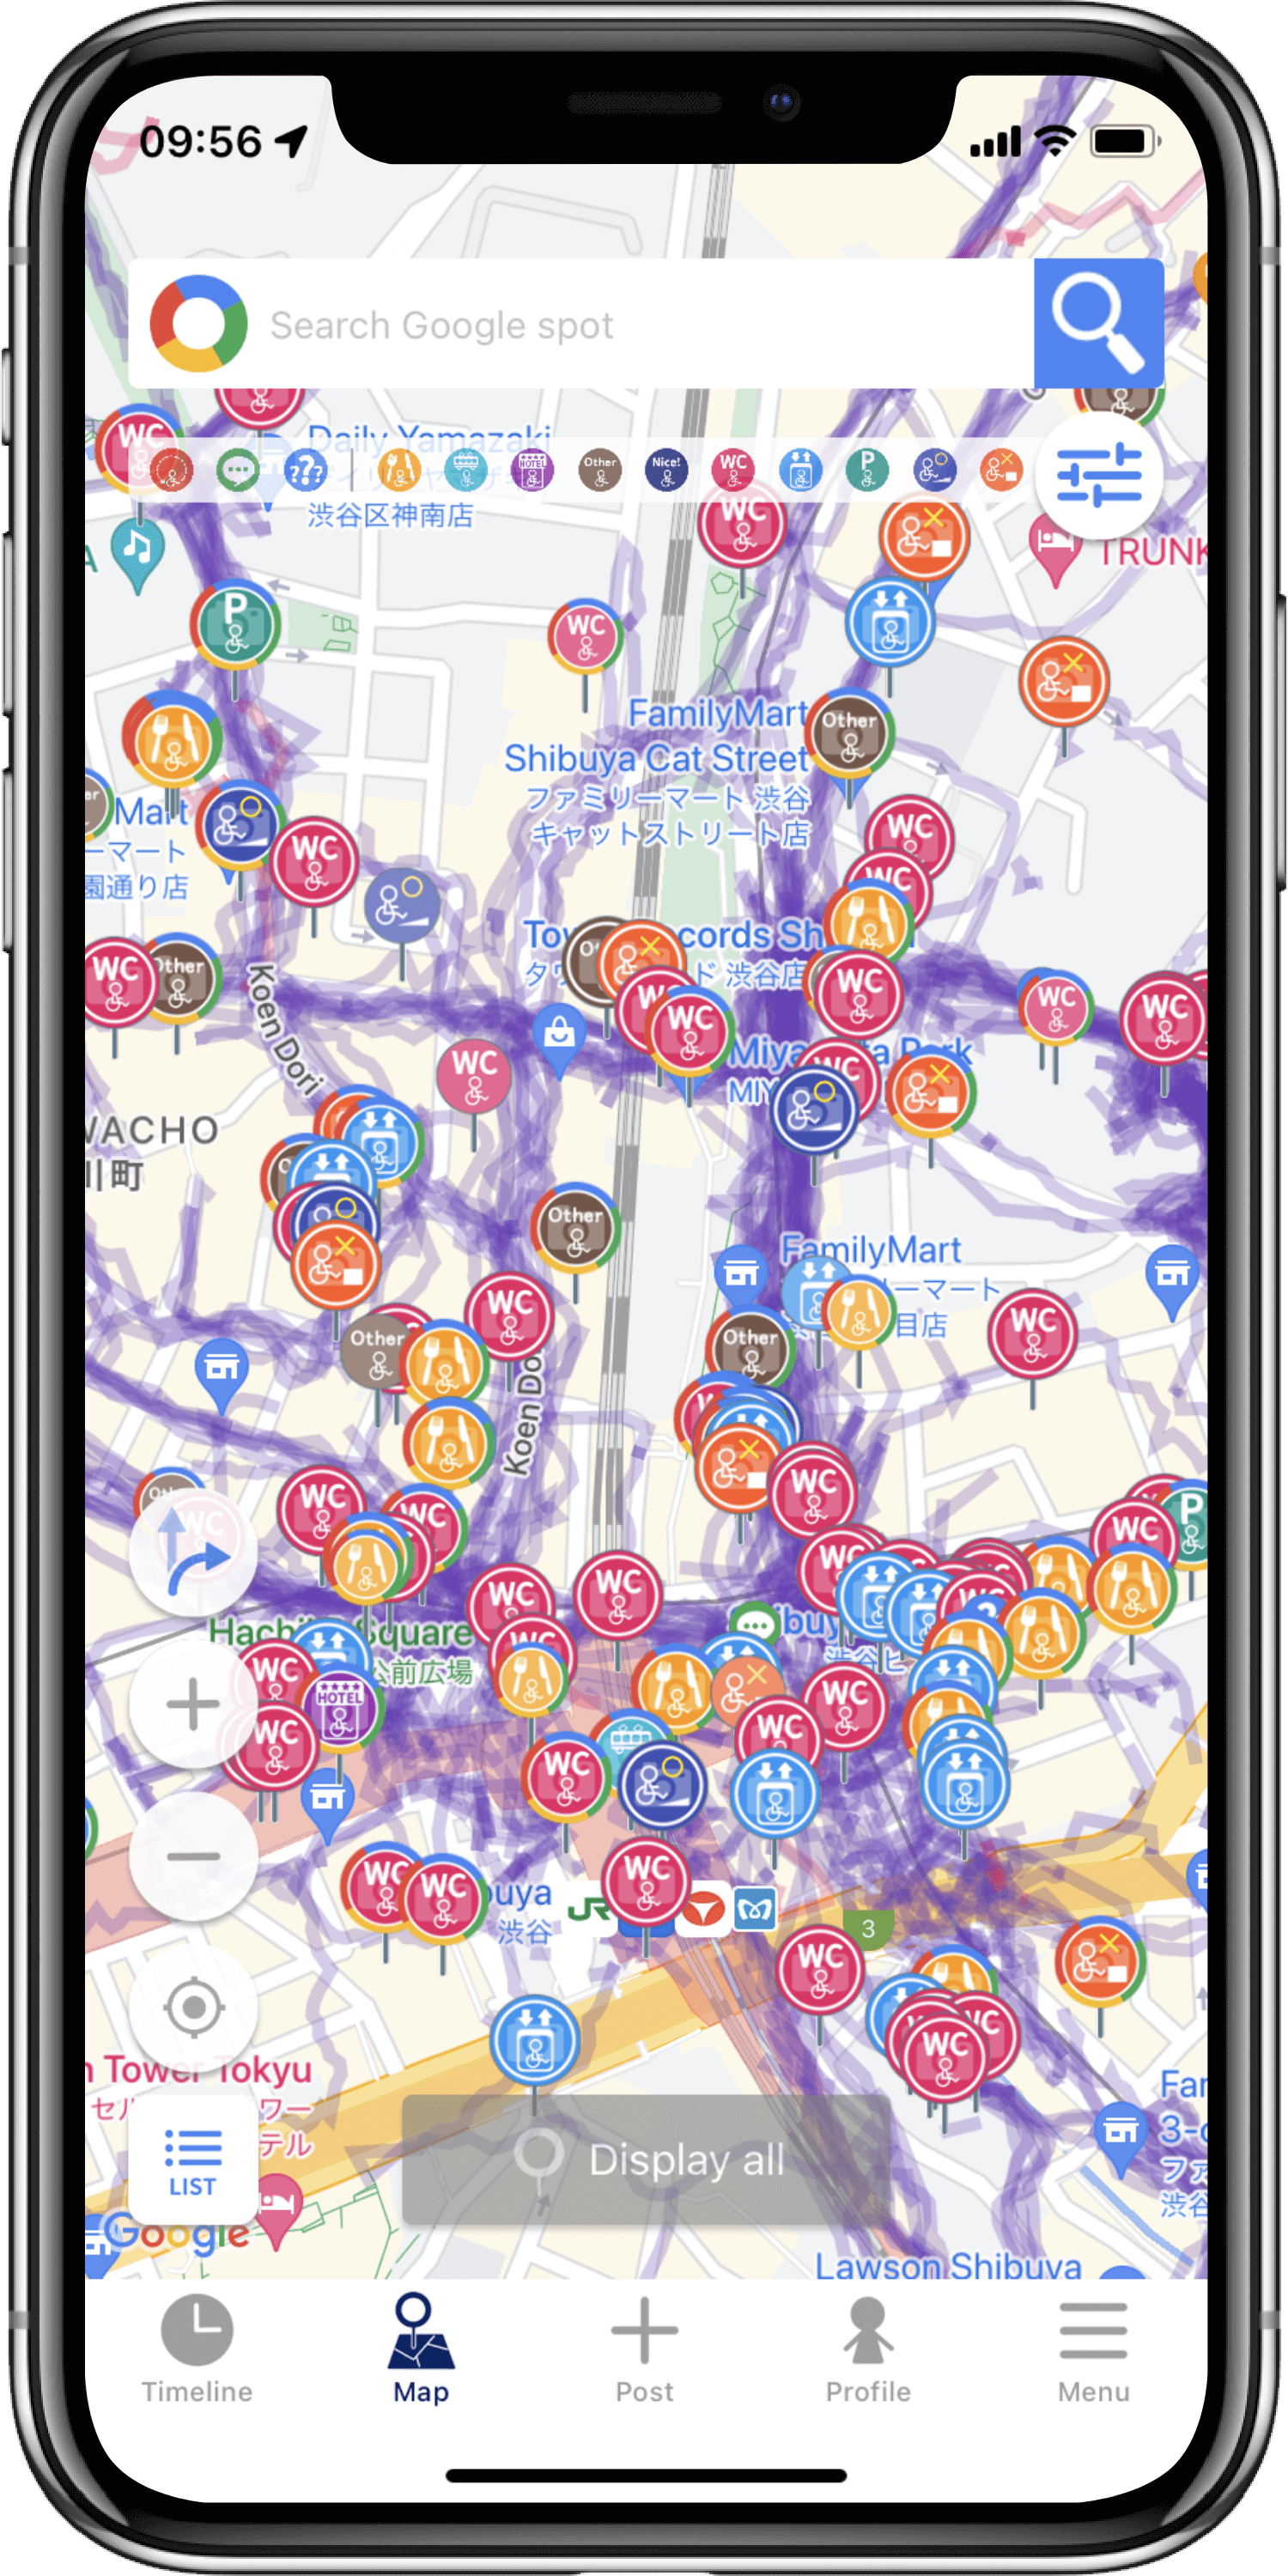 バリアフリーマップ「WheeLog!」の画面が表示されたスマートフォンの写真です。地図に車椅子に対応した施設の情報を表すカラフルなアイコンが表示されています